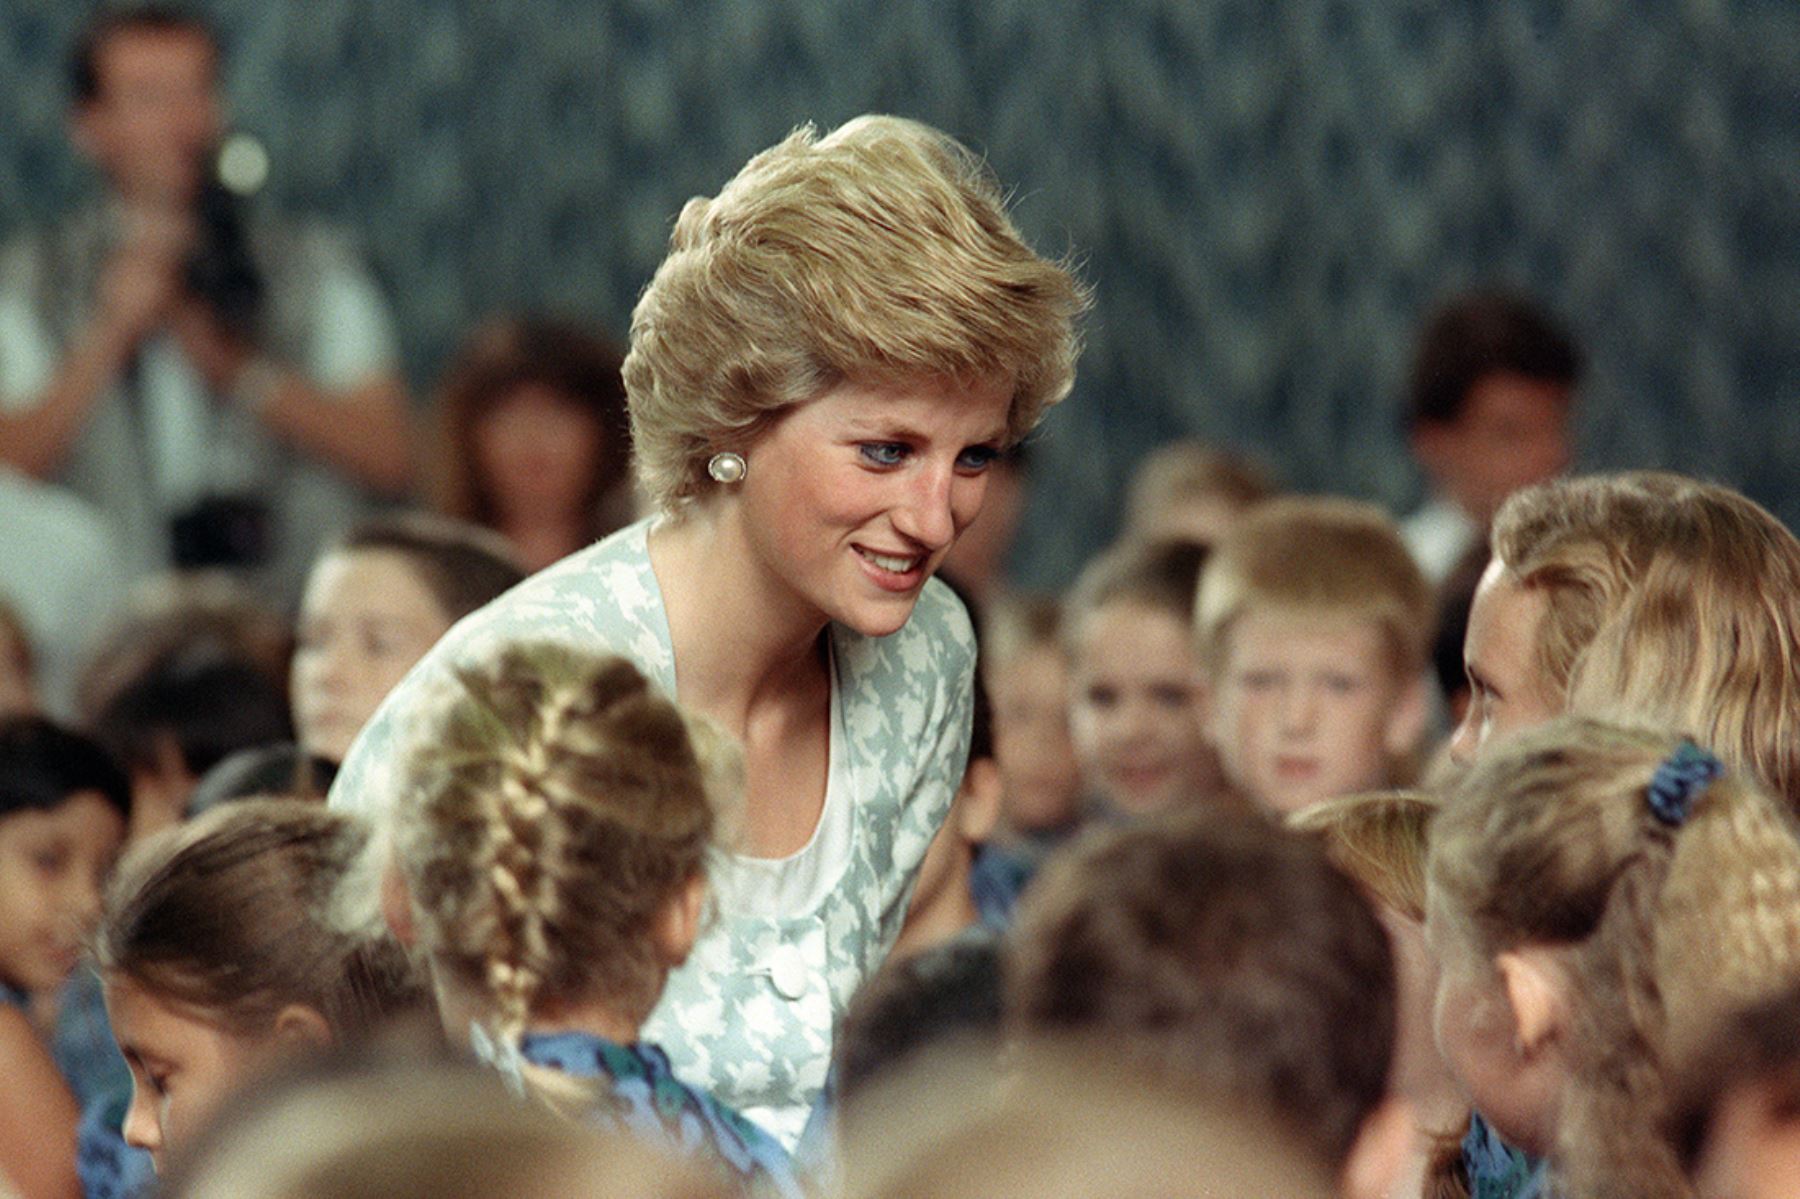 Diana, princesa de Gales, saluda y escucha a los niños durante su visita a una escuela británica el 6 diciembre de 1989. 
Foto: AFP